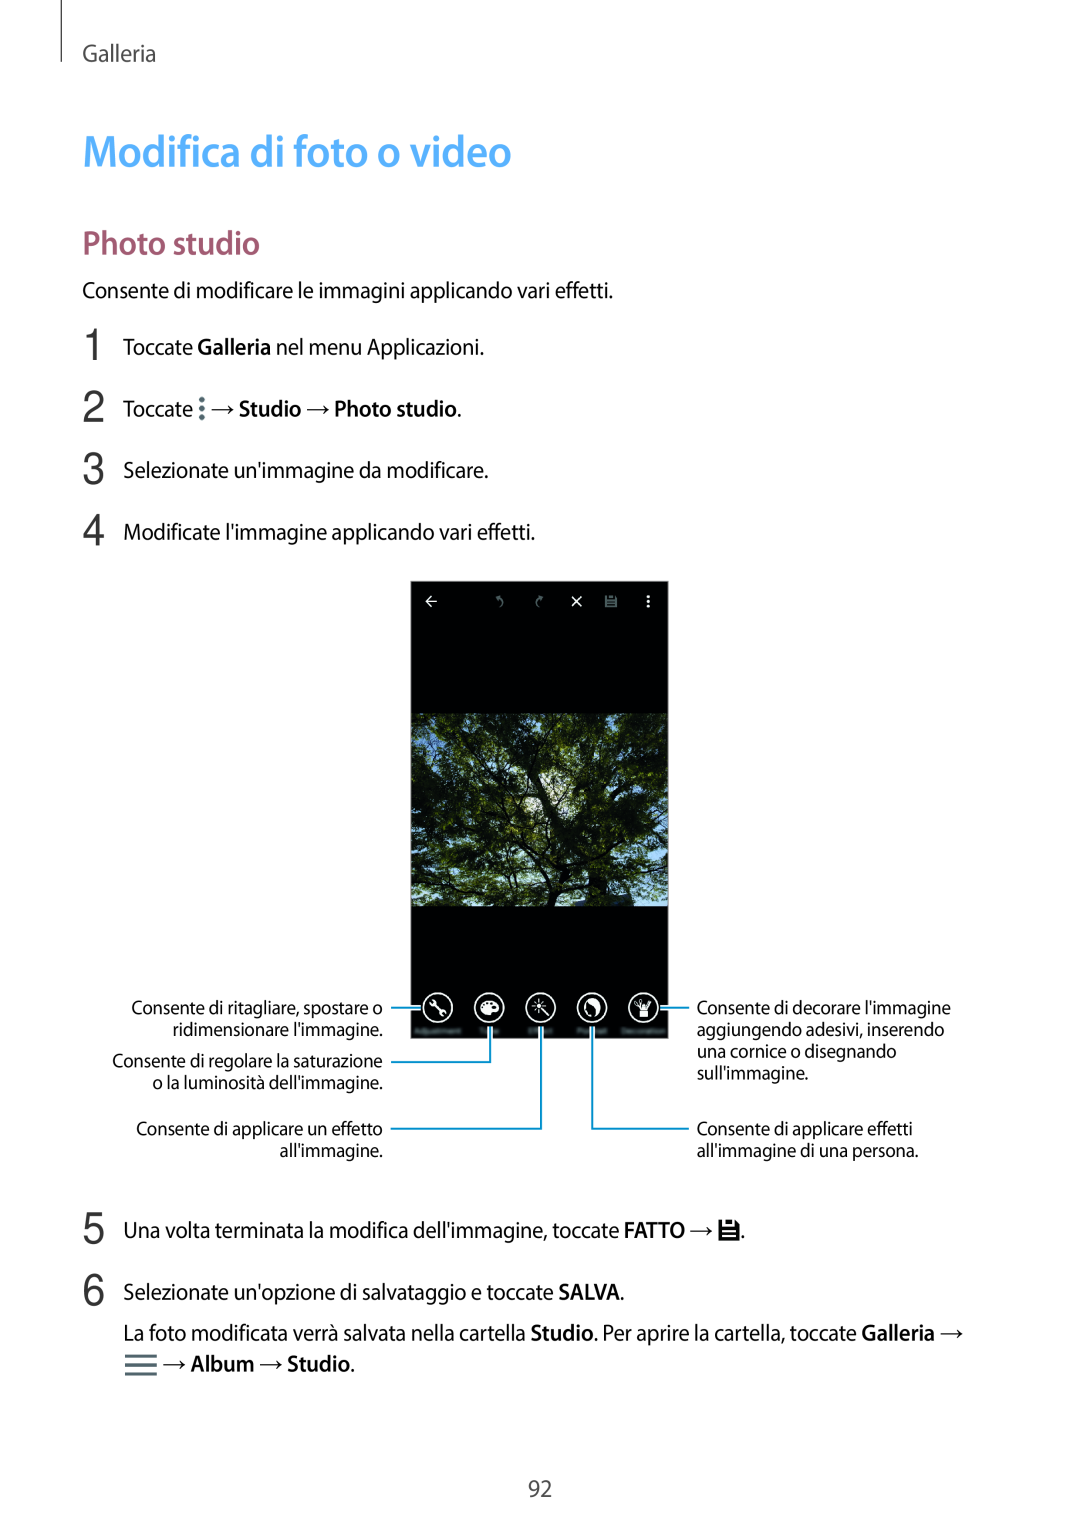 Samsung SM-G800FZKAPLS manual Modifica di foto o video, Toccate →Studio →Photo studio, →Album →Studio, Galleria 